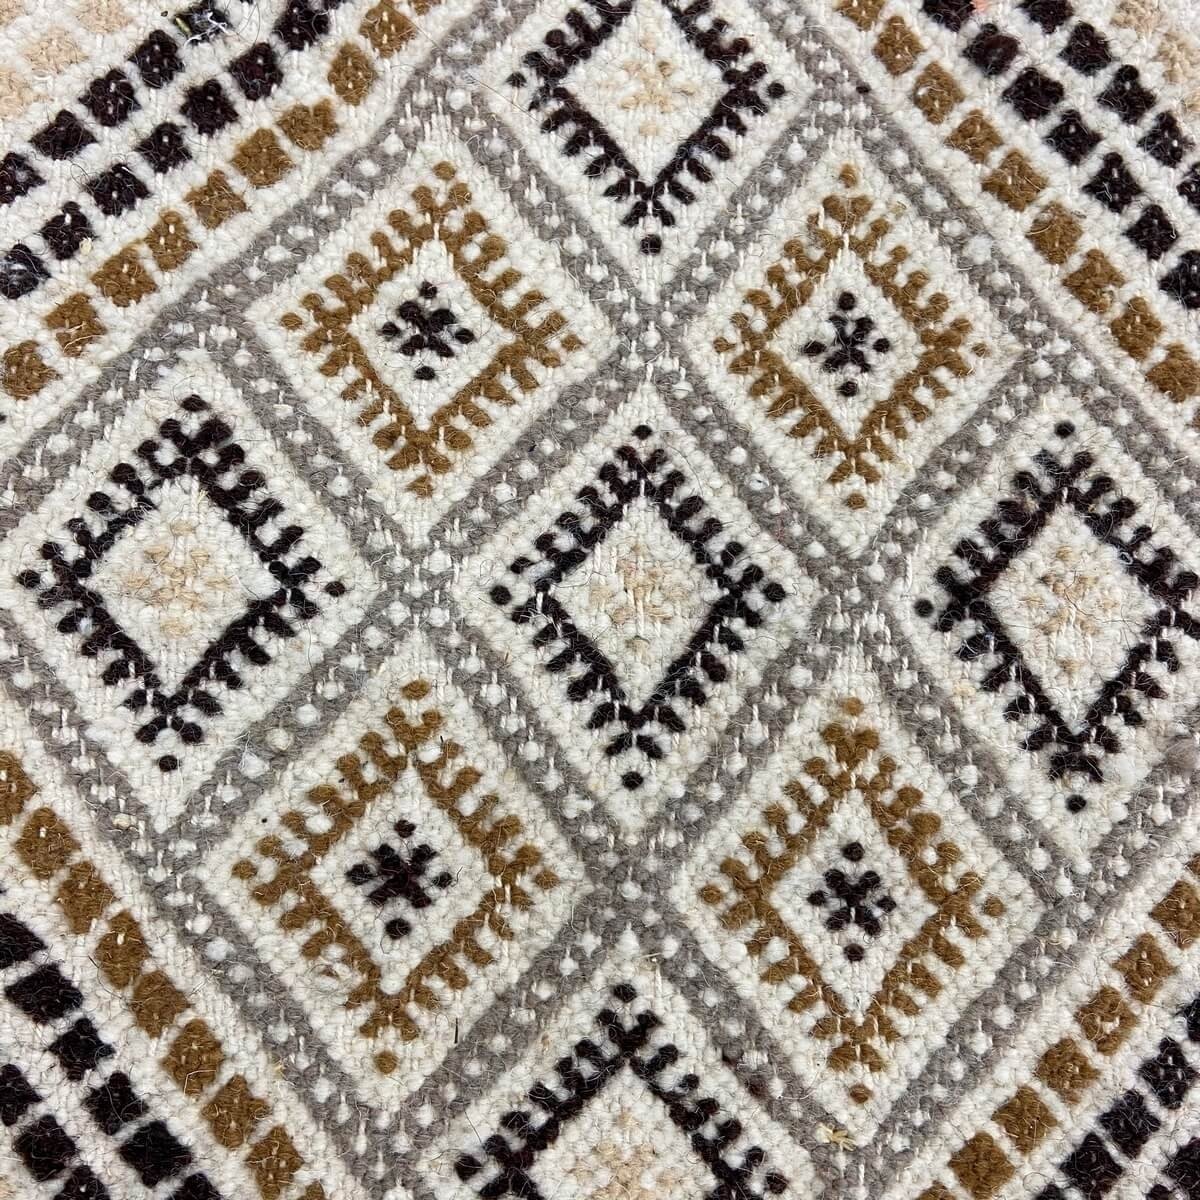 Berber carpet Rug Margoum Zaatar 78x318 cm White/Brown (Handmade, Wool, Tunisia) Tunisian margoum rug from the city of Kairouan.